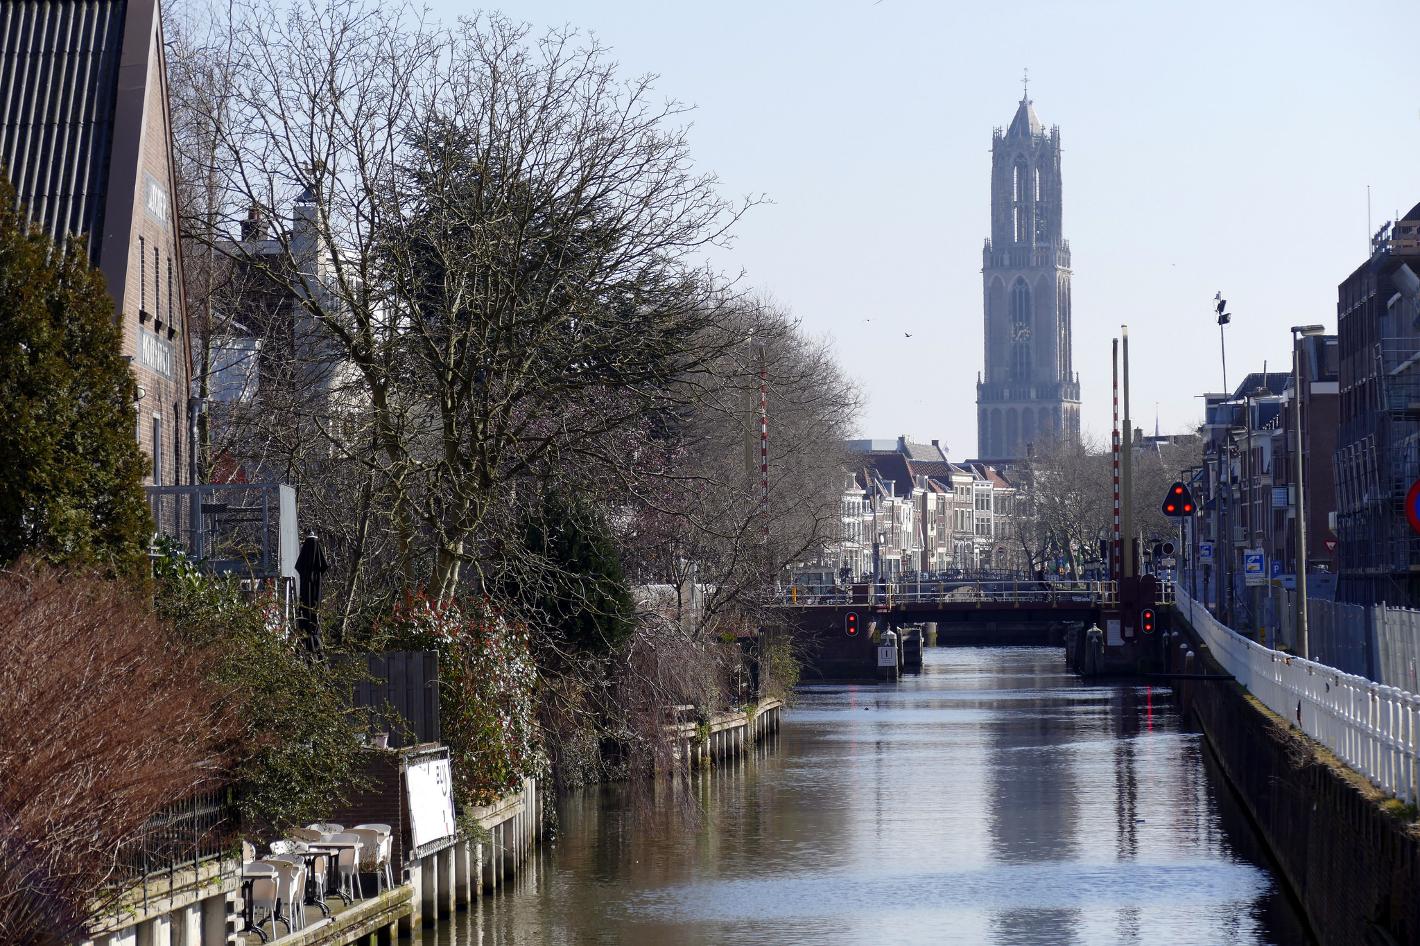 Foto Domtoren in Utrecht, Aussicht, Besichtigung, Erfahrung - #1